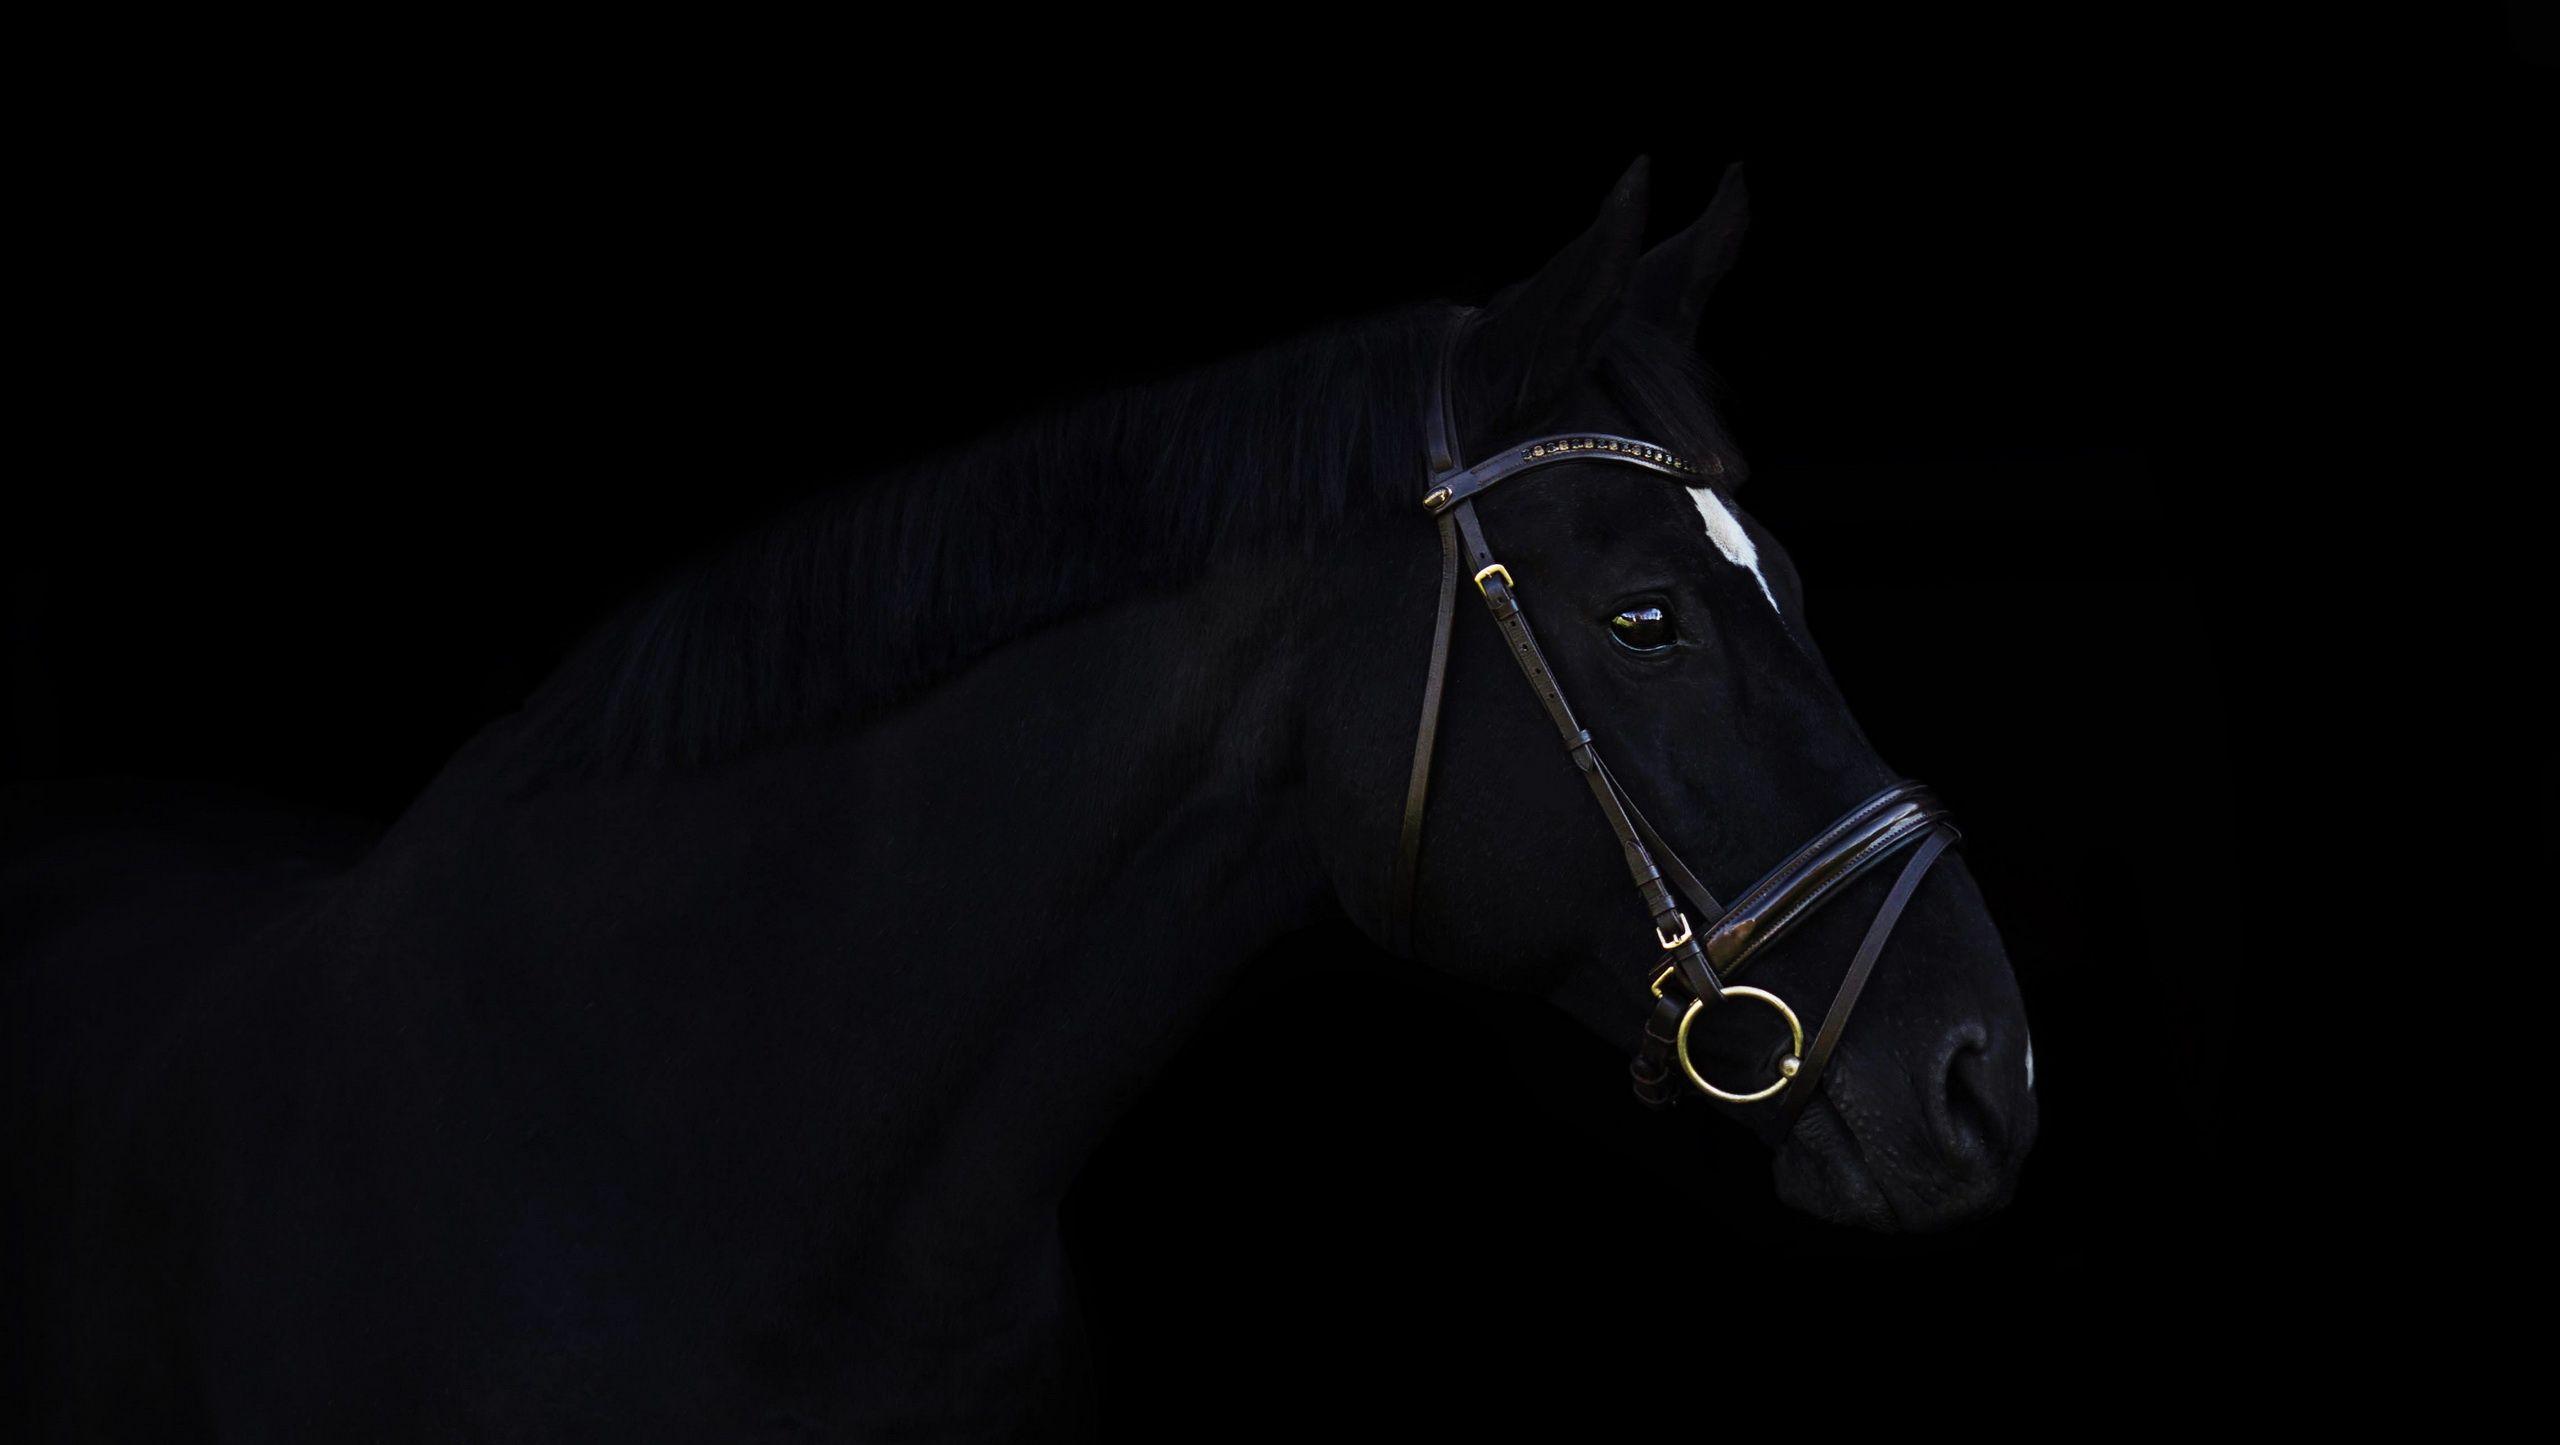 Dark Horse, HD Animals, 4k Wallpaper, Image, Background, Photo